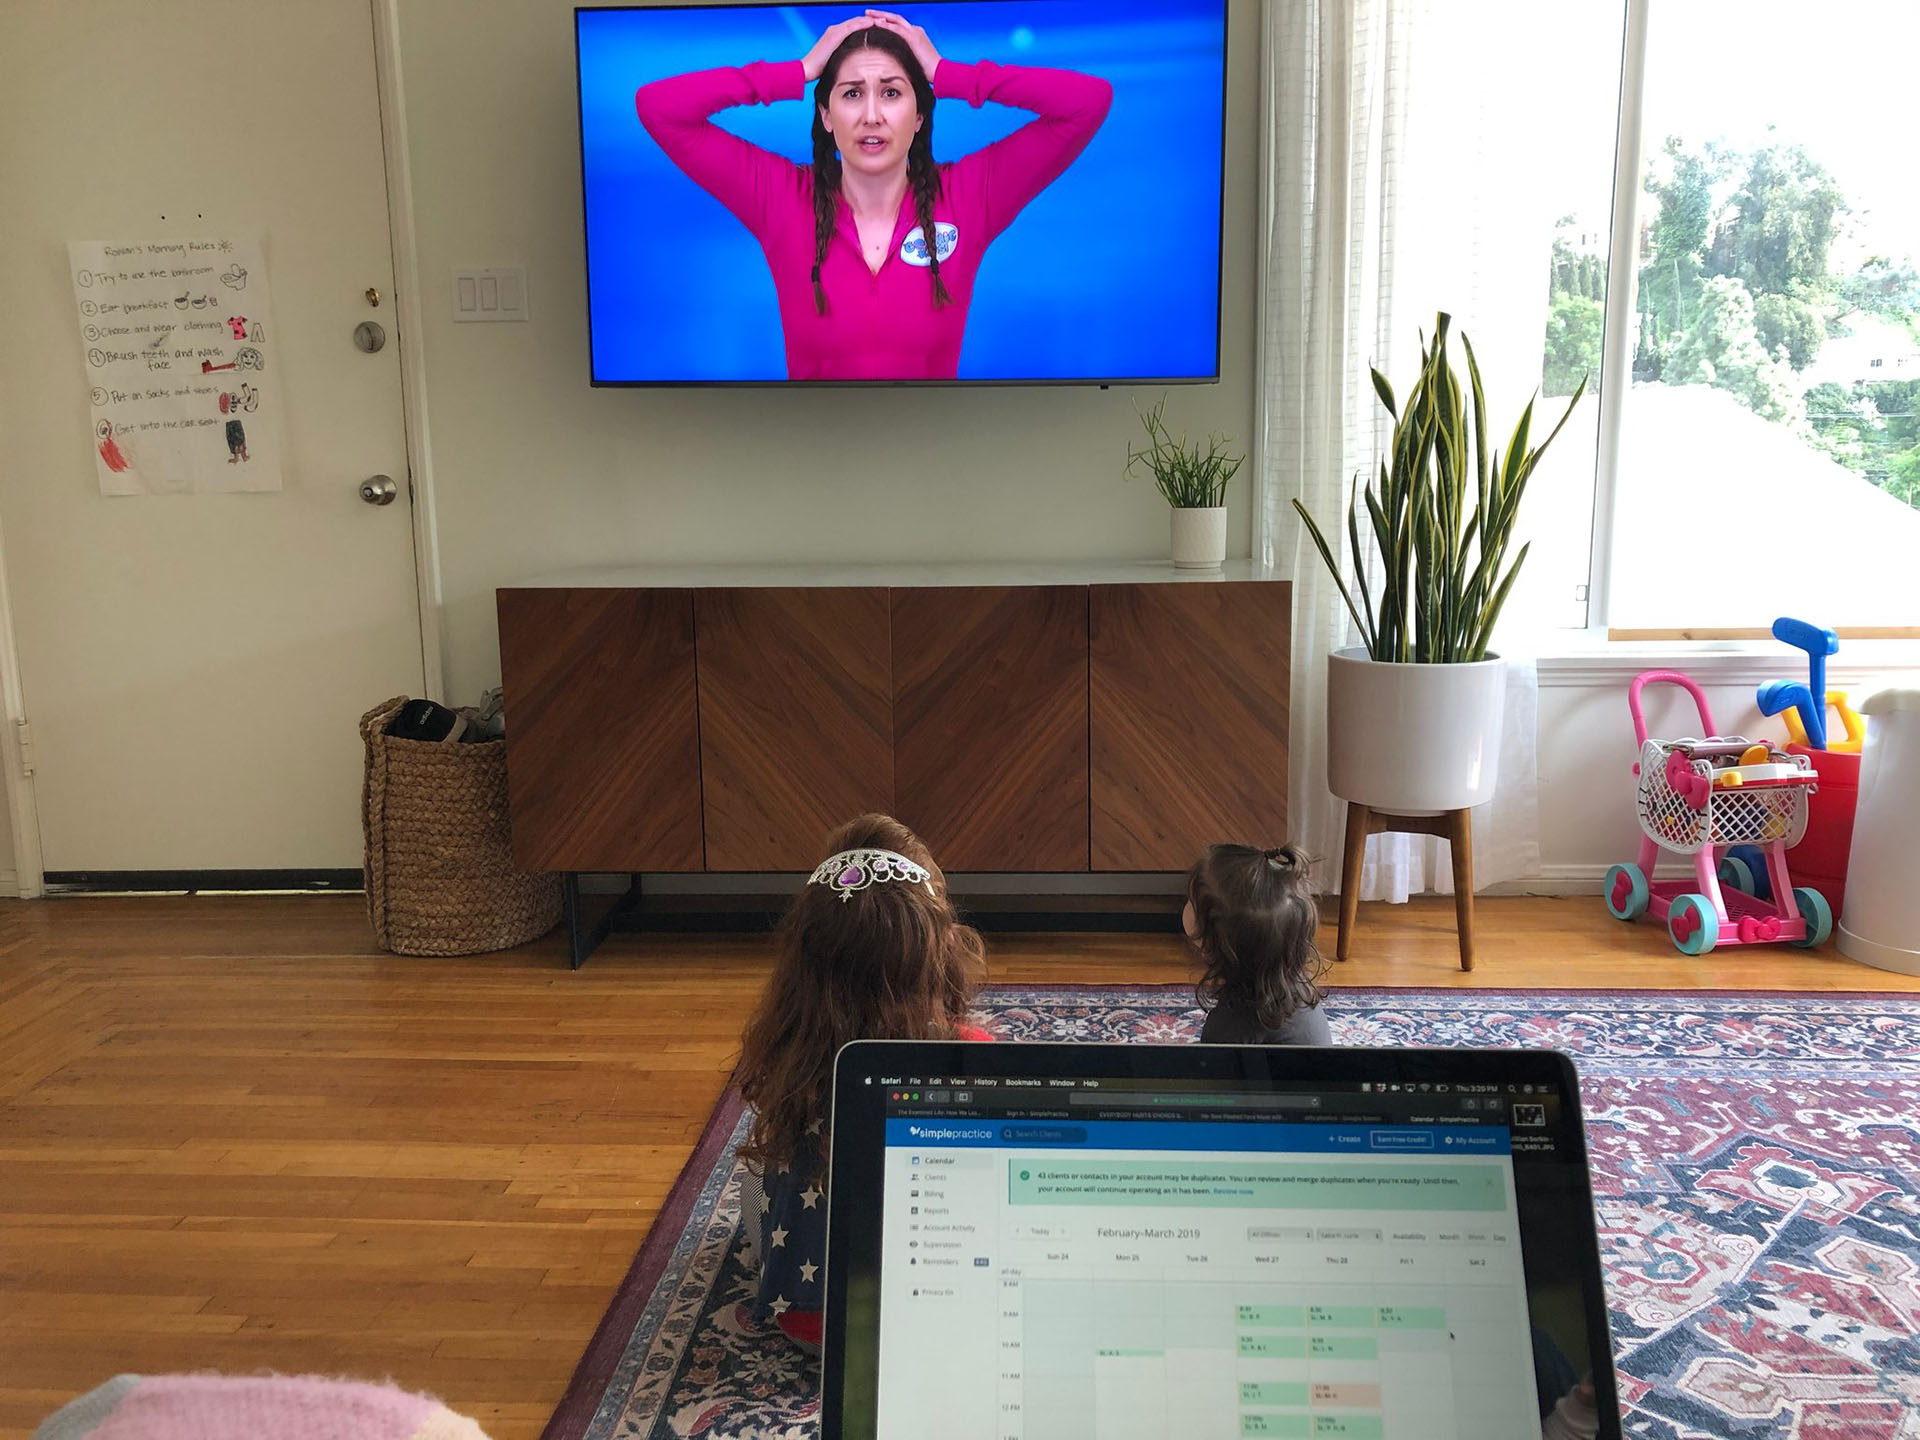 Las hijas de Saba Lurie ven un video de yoga para niños en YouTube mientras ella trabaja desde su casa en Los Ángeles. (vía Saba Lurie vía The New York Times)